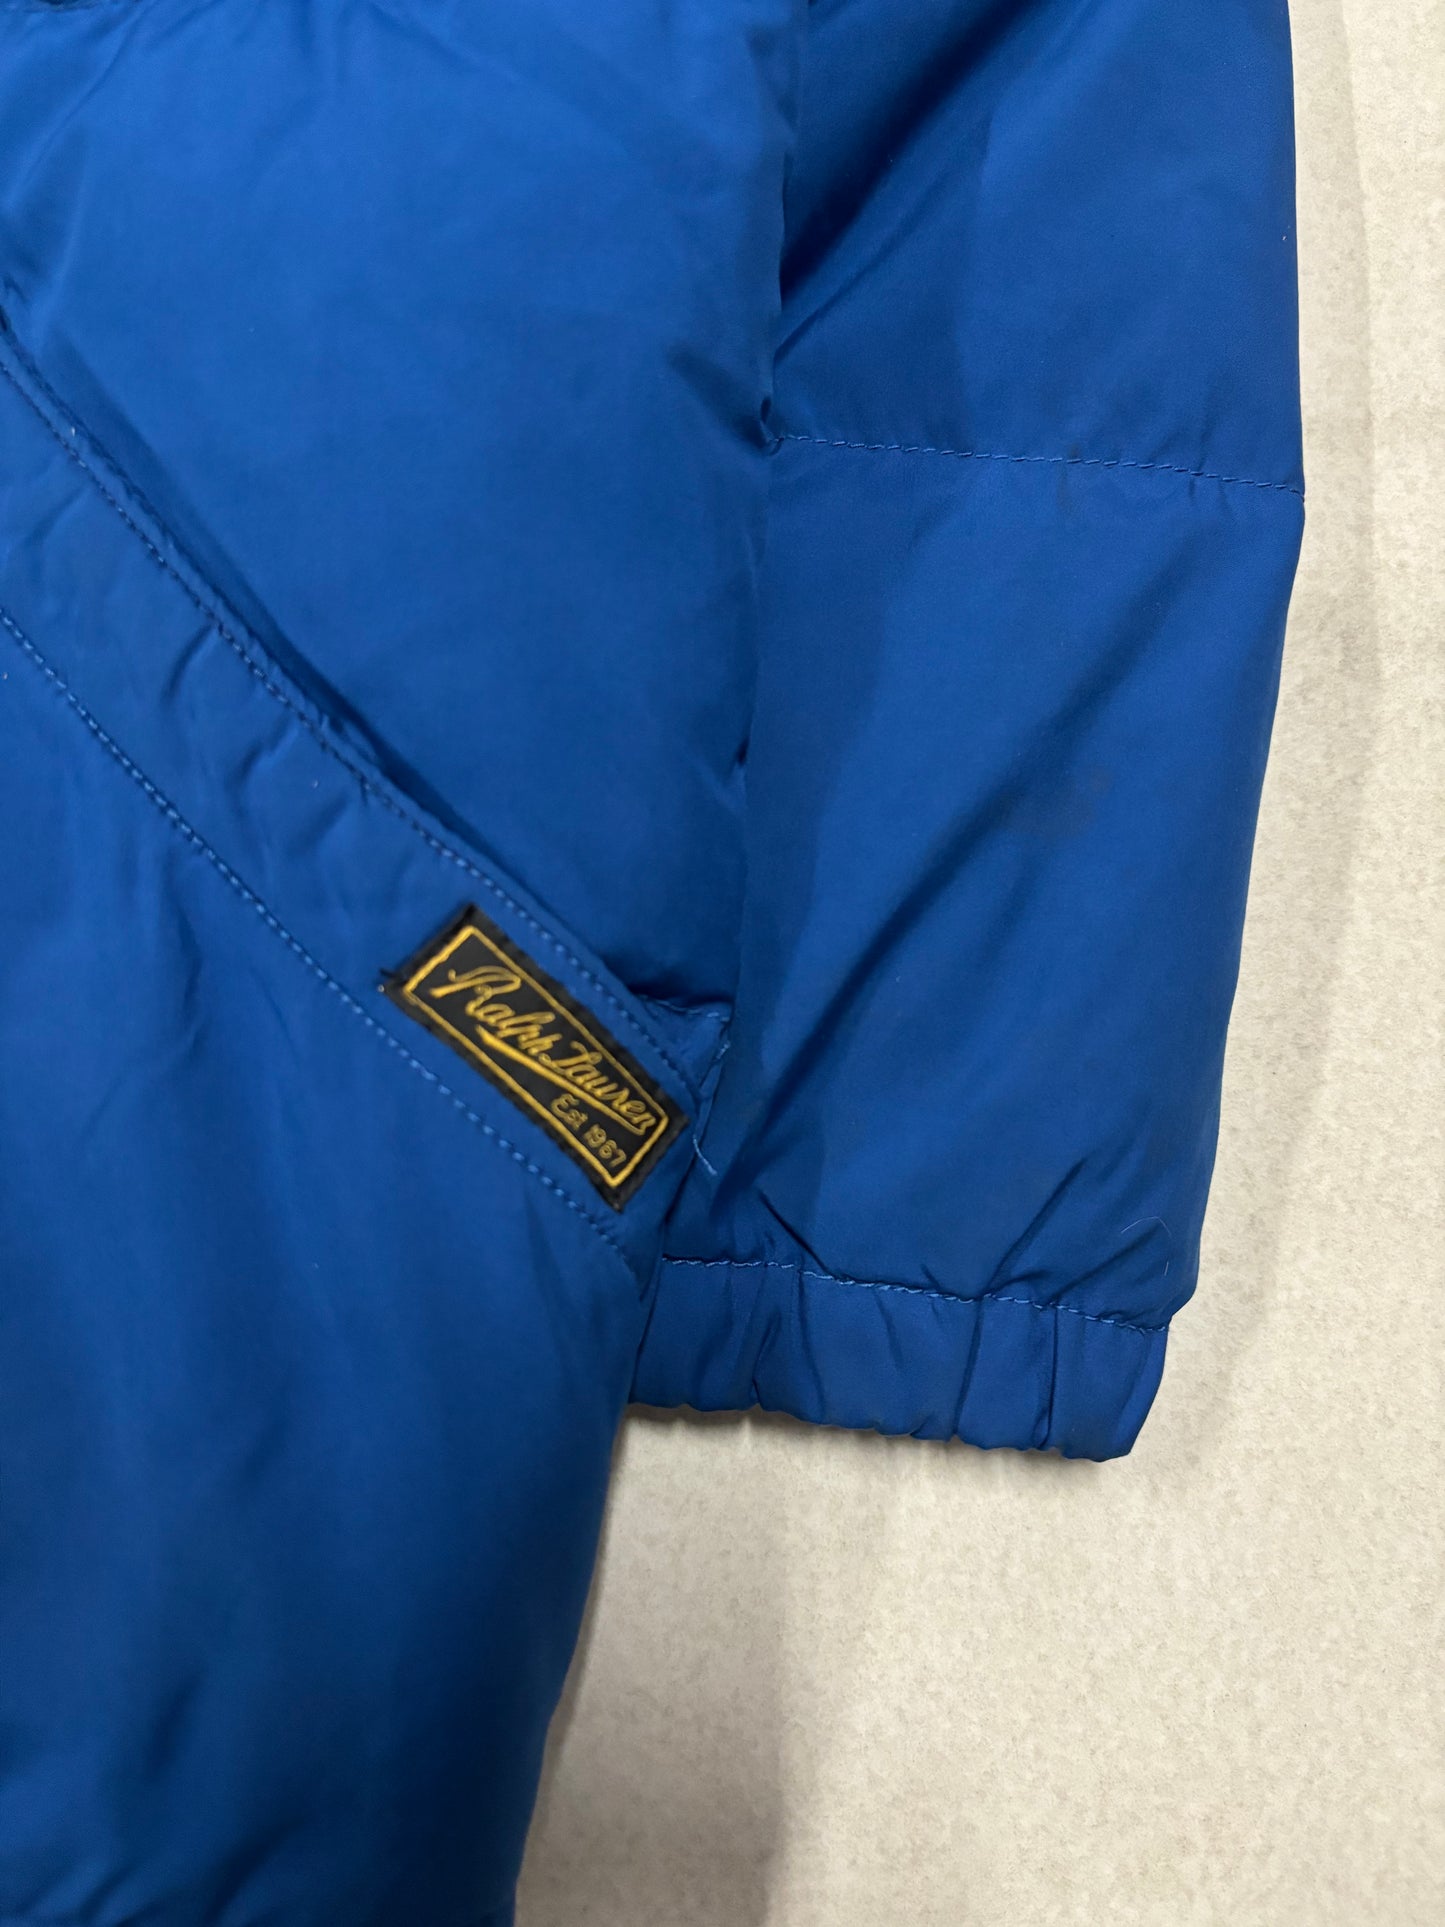 Polo Ralph Lauren Down Jacket - S